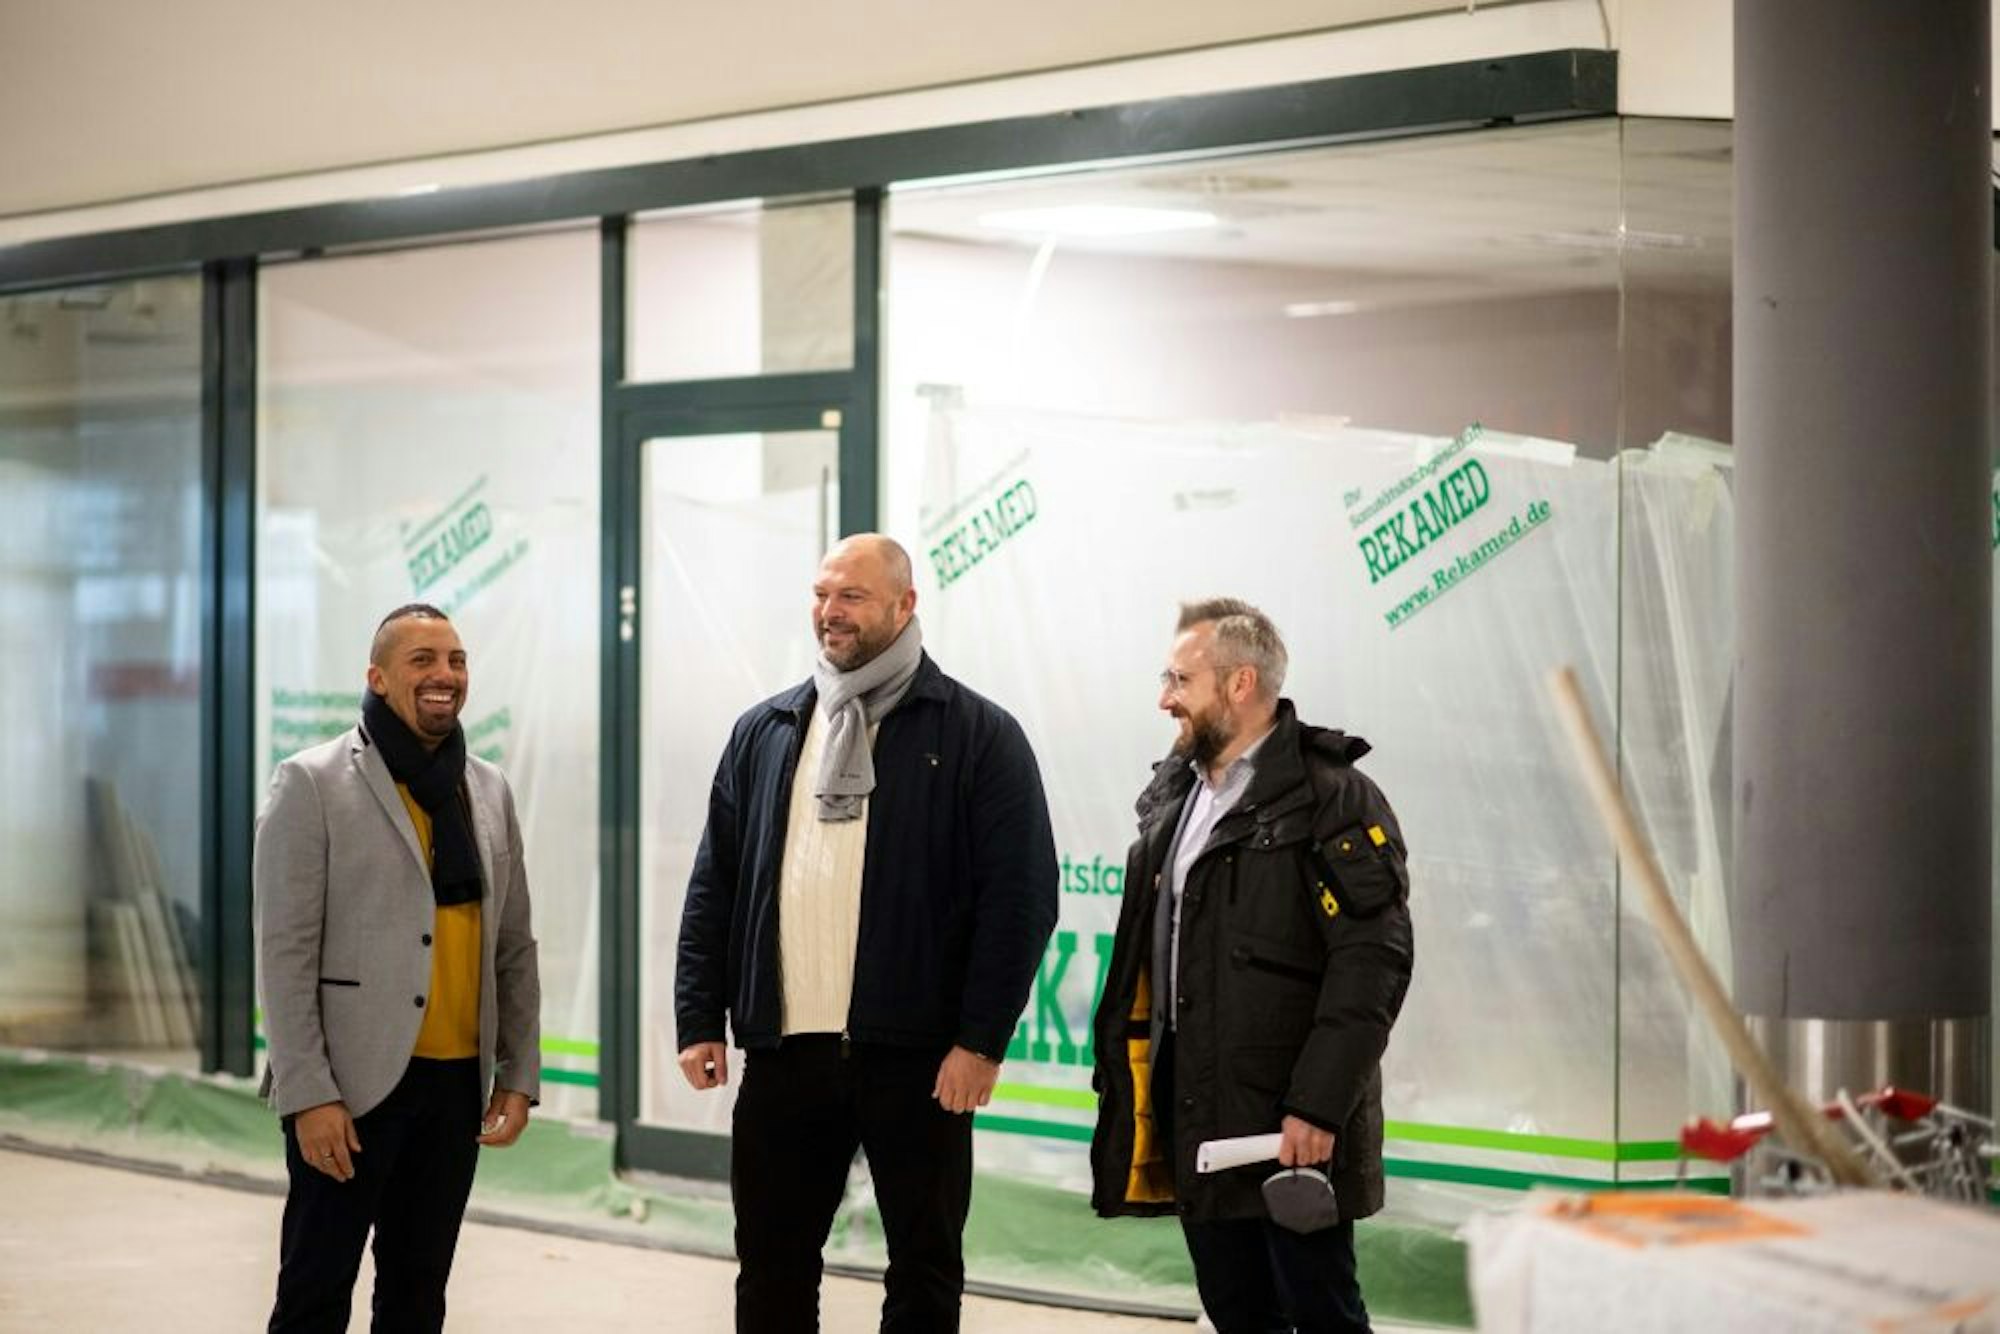 Die Euskirchener Tim Volk (l.) und Tobias Von Groote (M.) werden im Galleria einen Outlet-Klamotten-Laden eröffnen. Galleria-Besitzer Carlo Wisskirchen freut sich auf die Investoren.